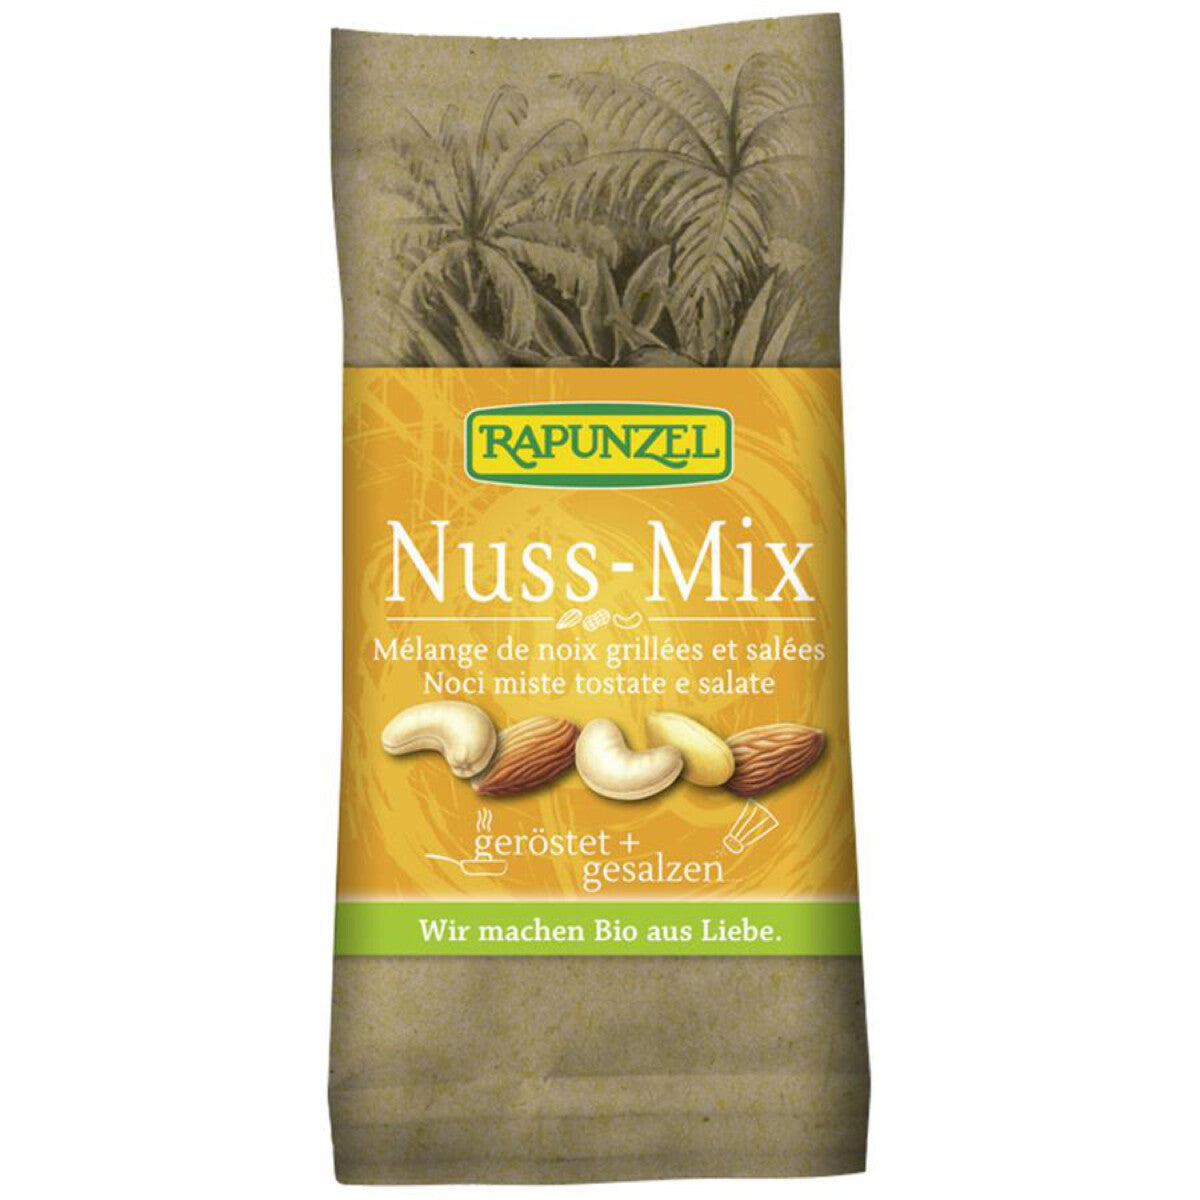 RAPUNZEL Nuss-Mix geröstet, gesalzen - 60 g 